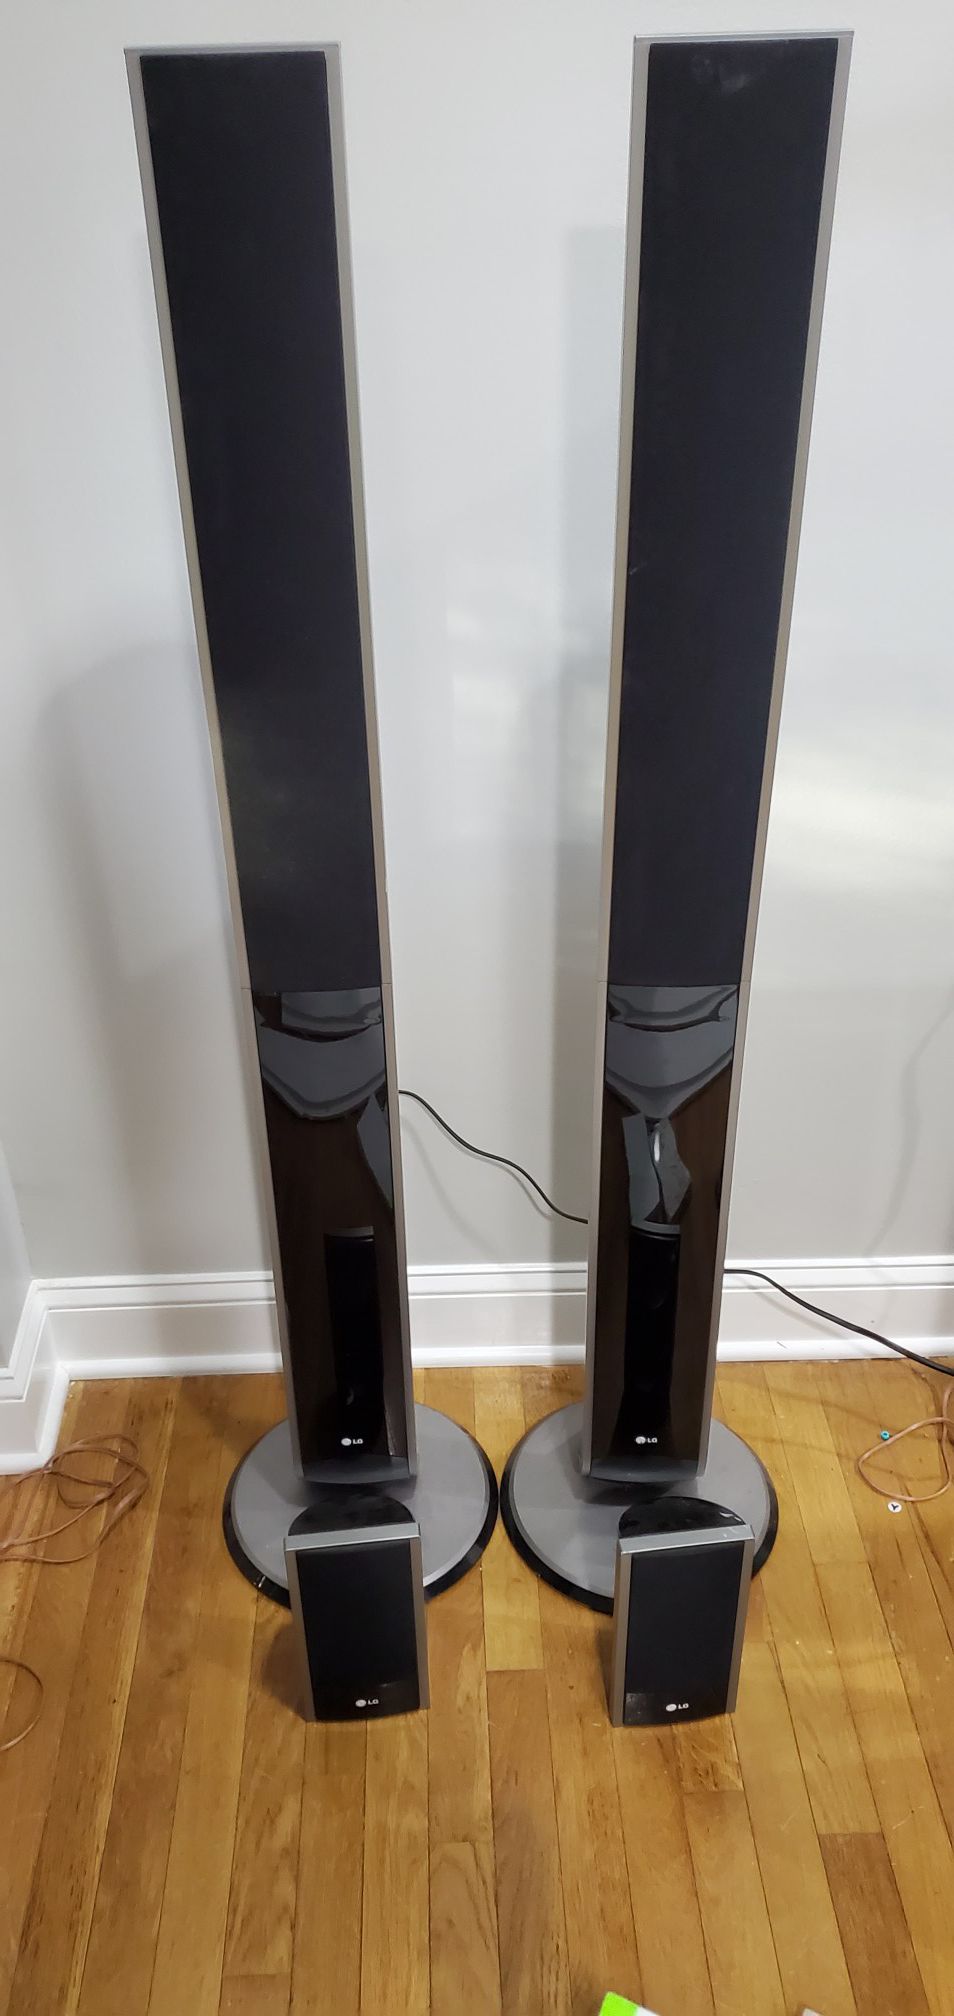 LG 5 Channel Surround Sound Speaker Set - Optional Subwoofer